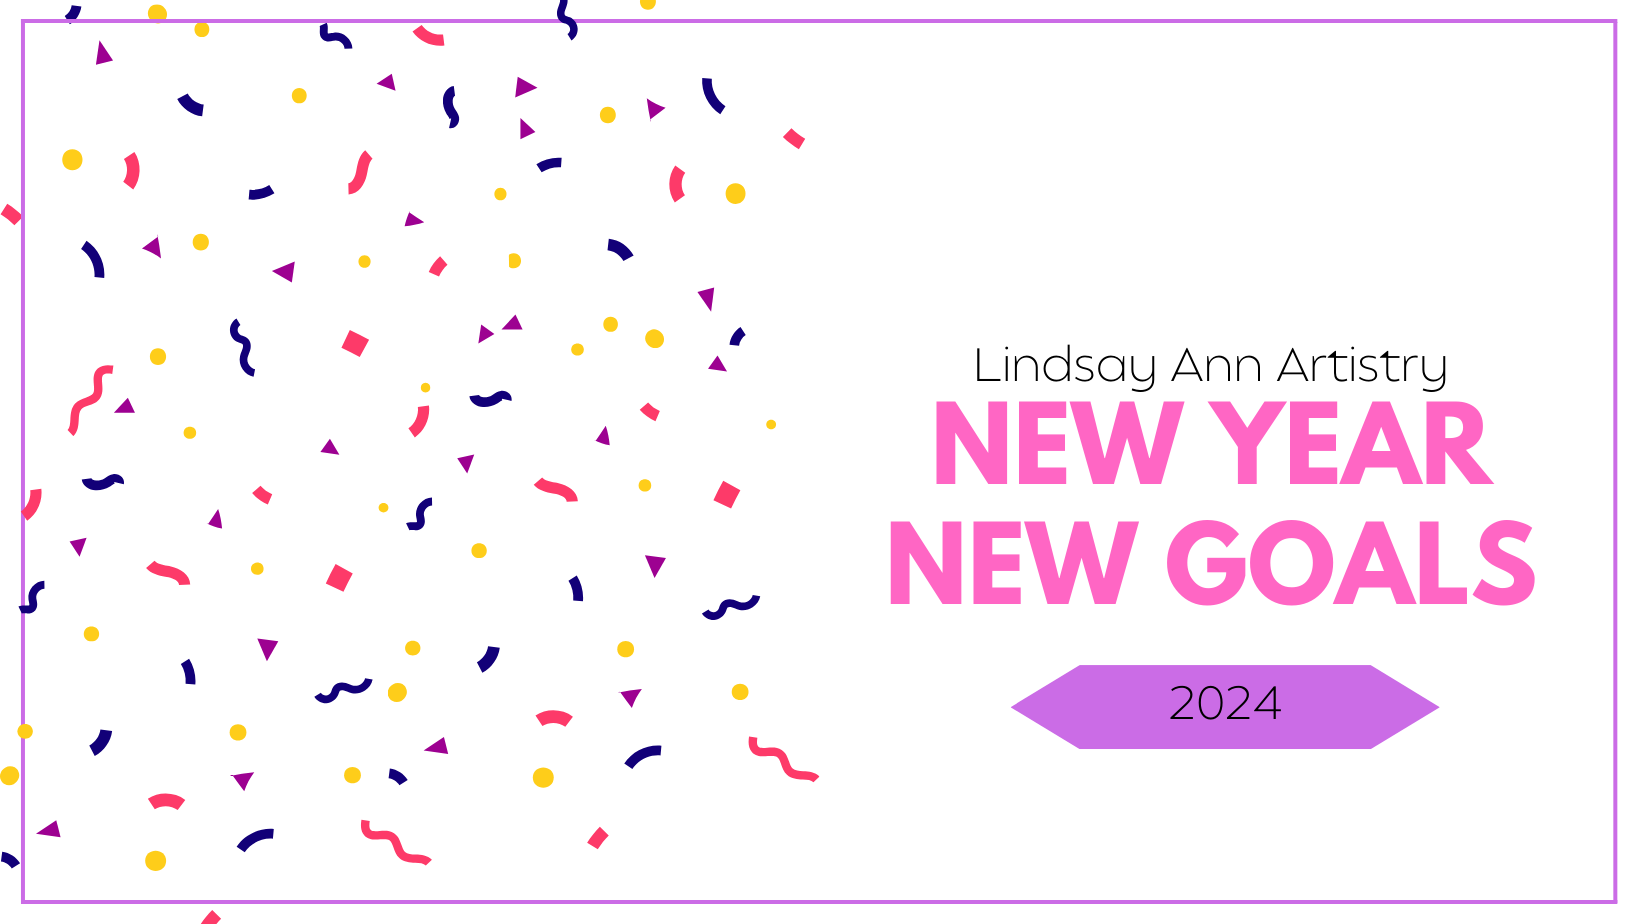 2024 Business Goals for Lindsay Ann Artistry!